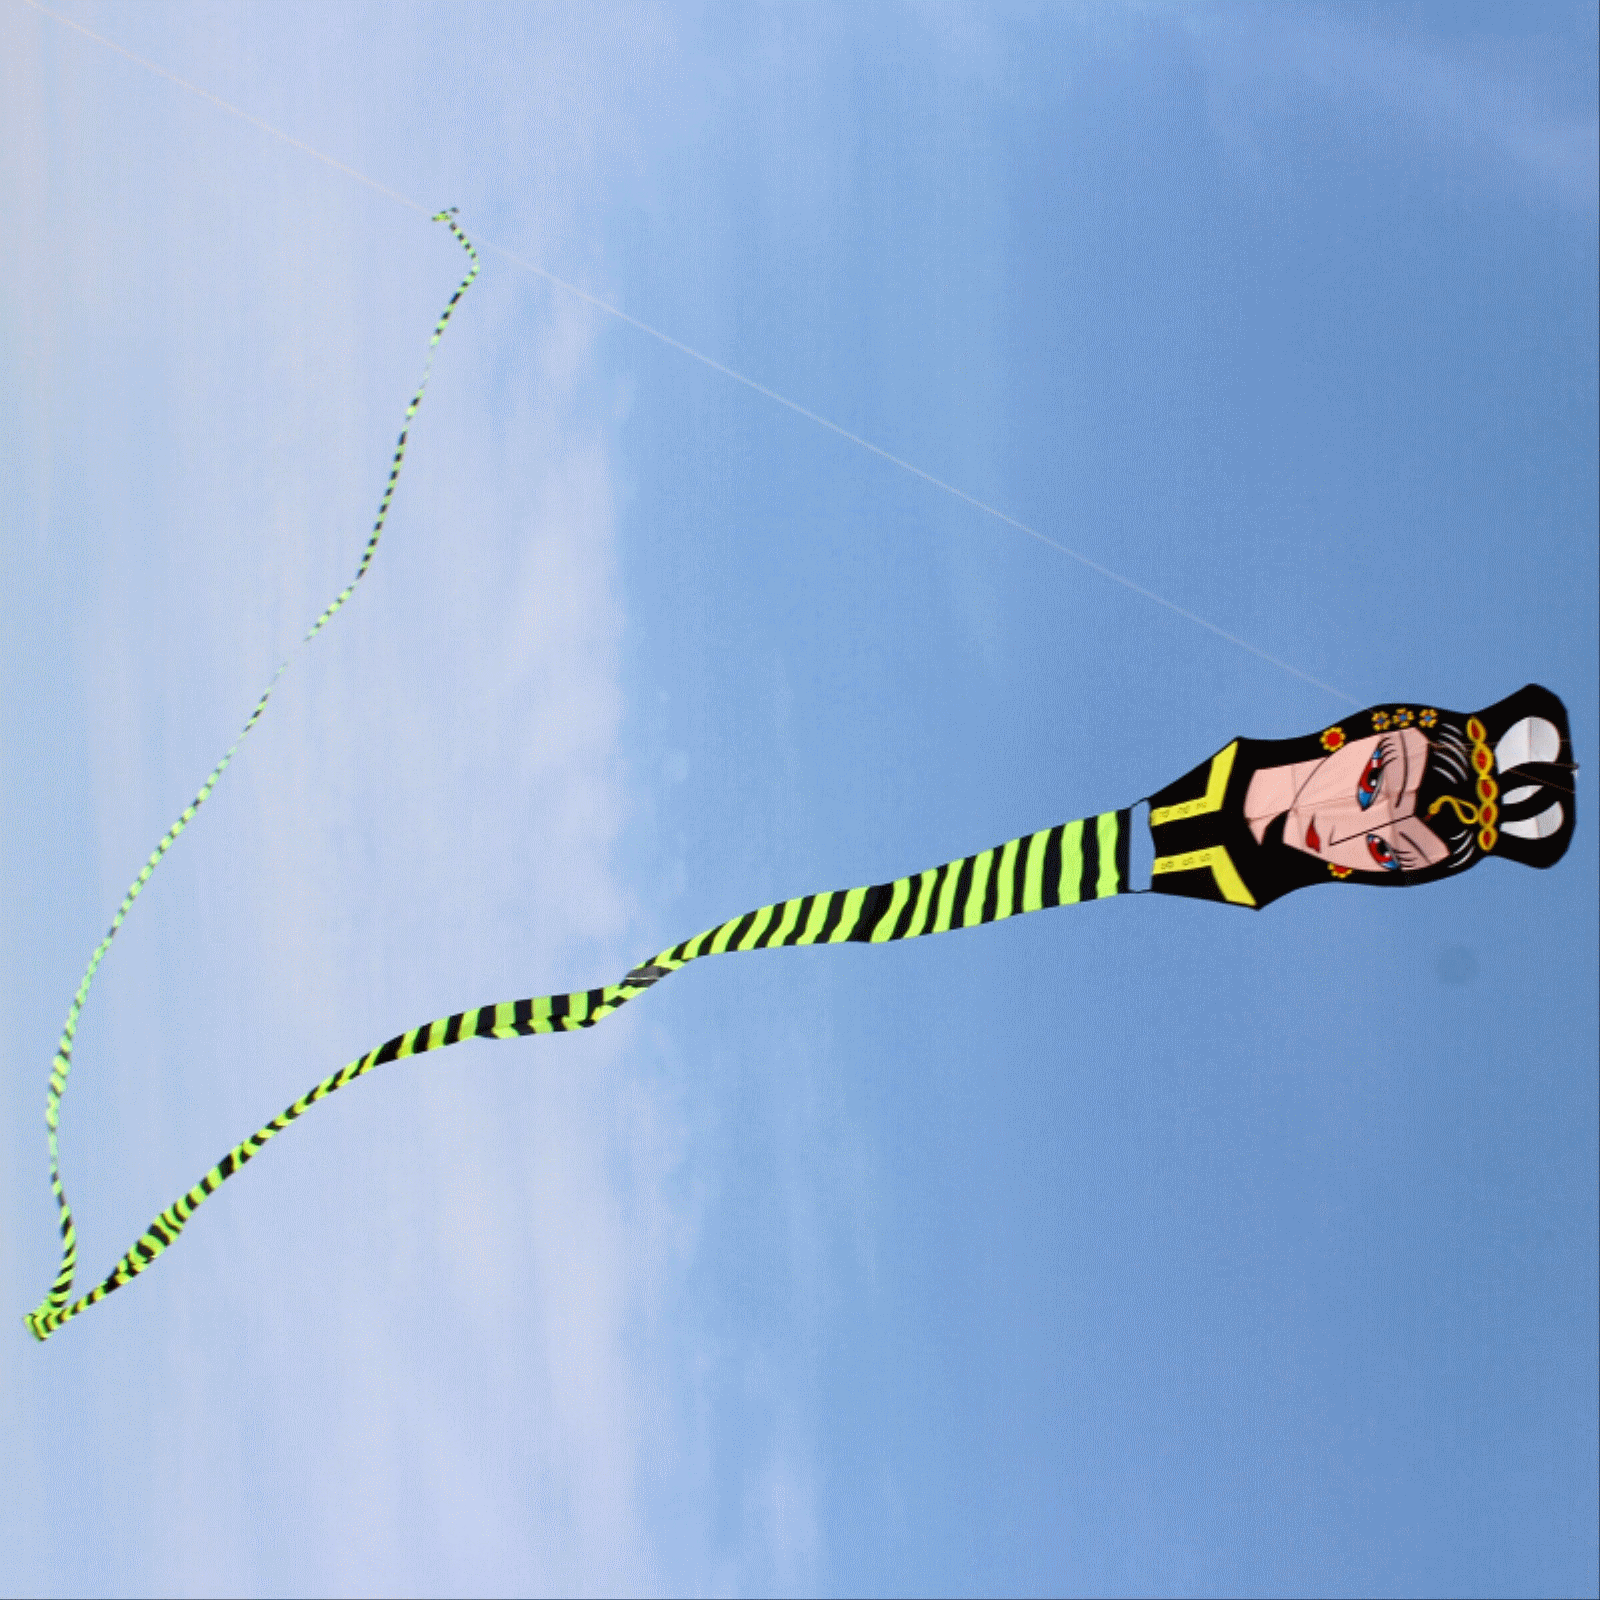 大型风筝美女蛇30米50米风筝微风可飞 天顺风筝2016新款风筝包邮